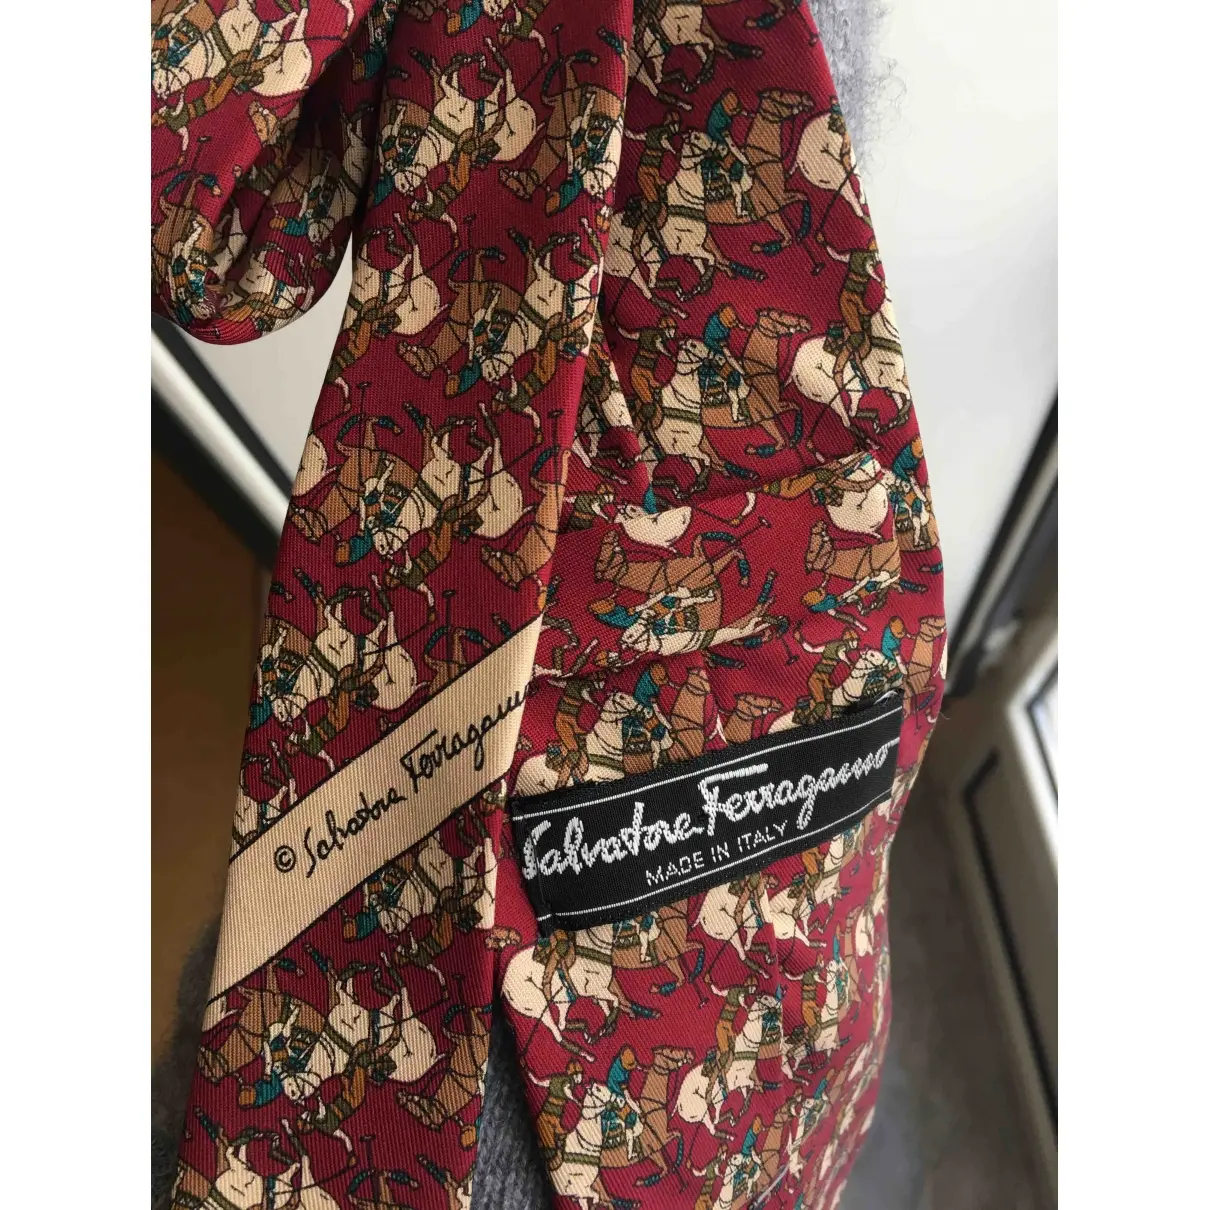 Salvatore Ferragamo Silk tie for sale